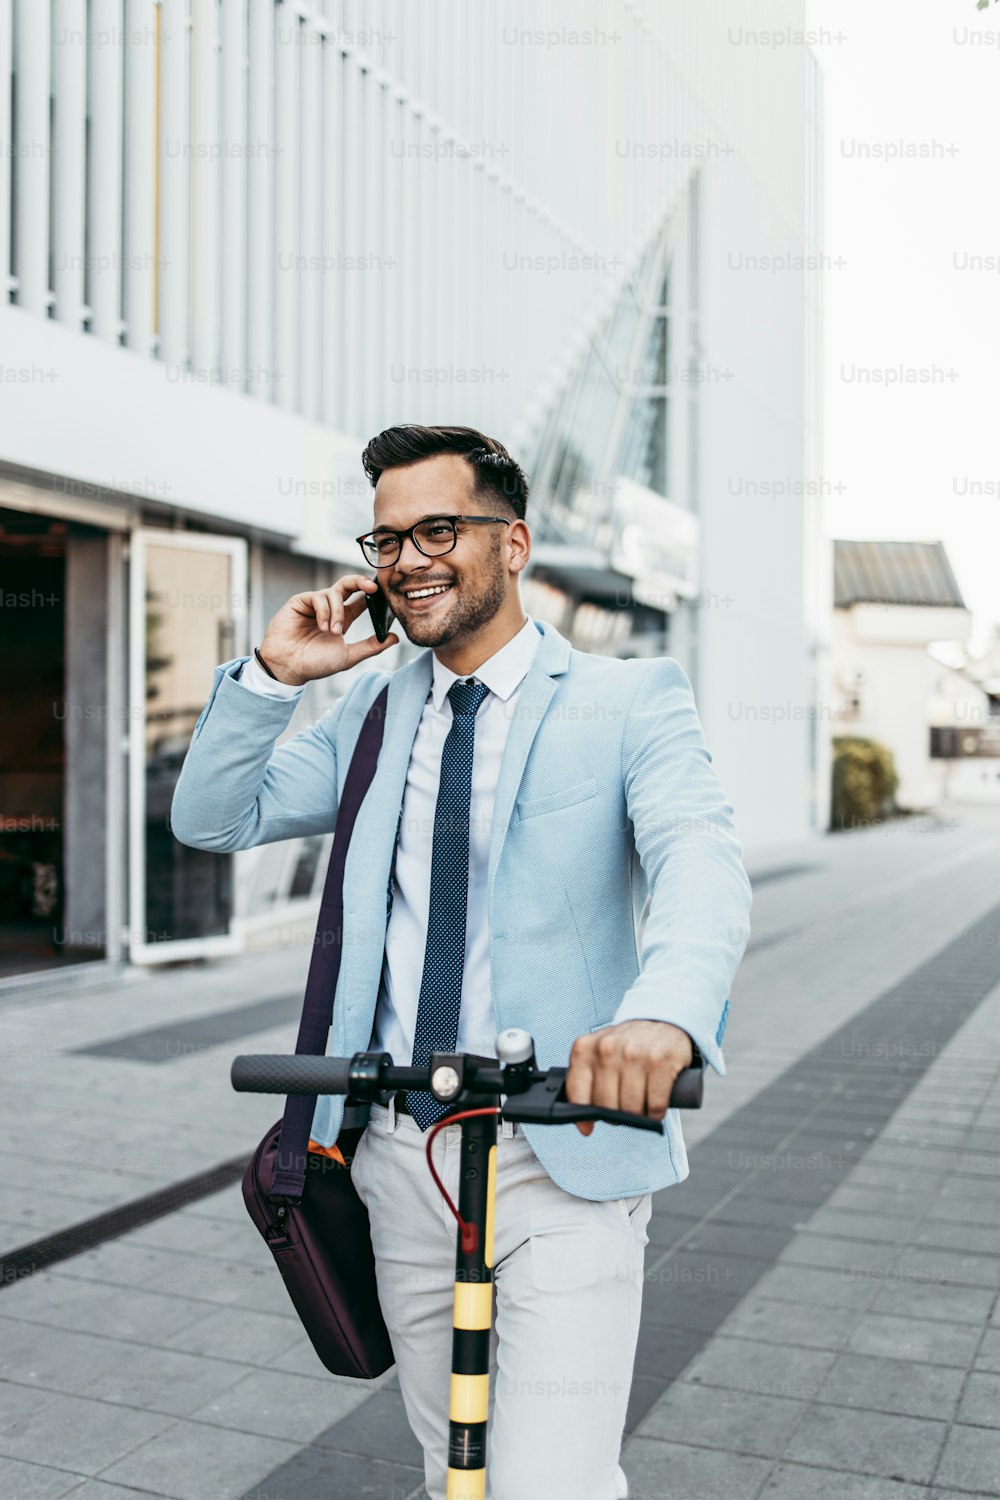 Jeune homme moderne utilisant et conduisant un scooter électrique dans la rue de la ville. Concept de transport moderne et écologique.